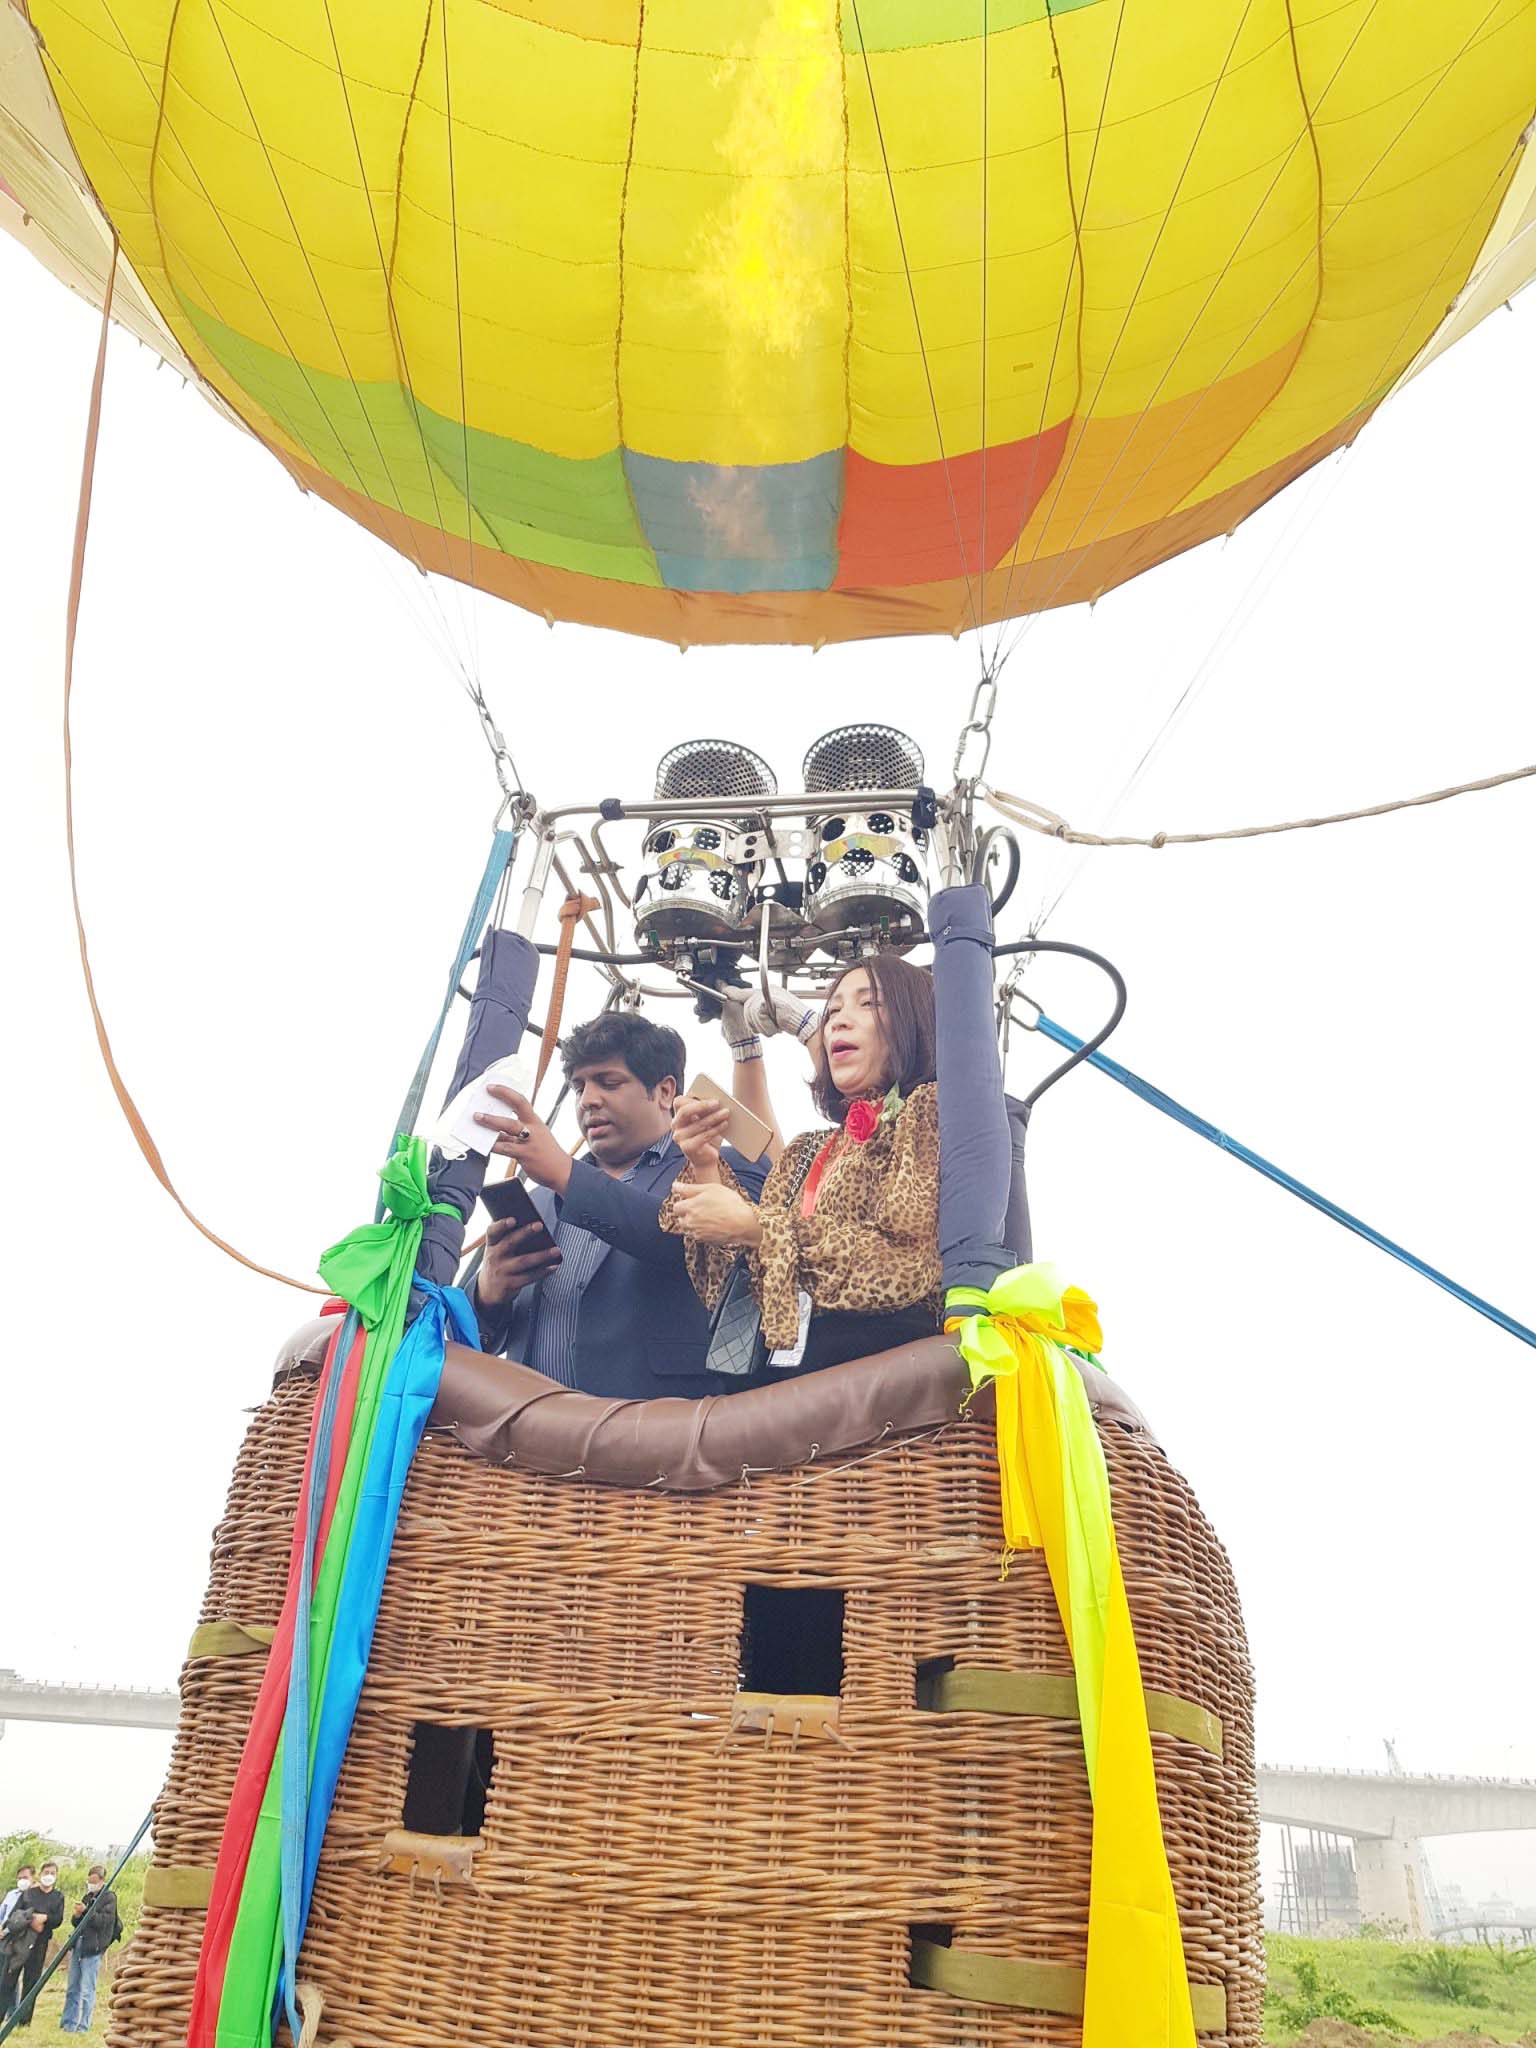 Lễ hội khinh khí cầu ở Hà Nội: Người dân háo hức chờ bay miễn phí - Ảnh 8.